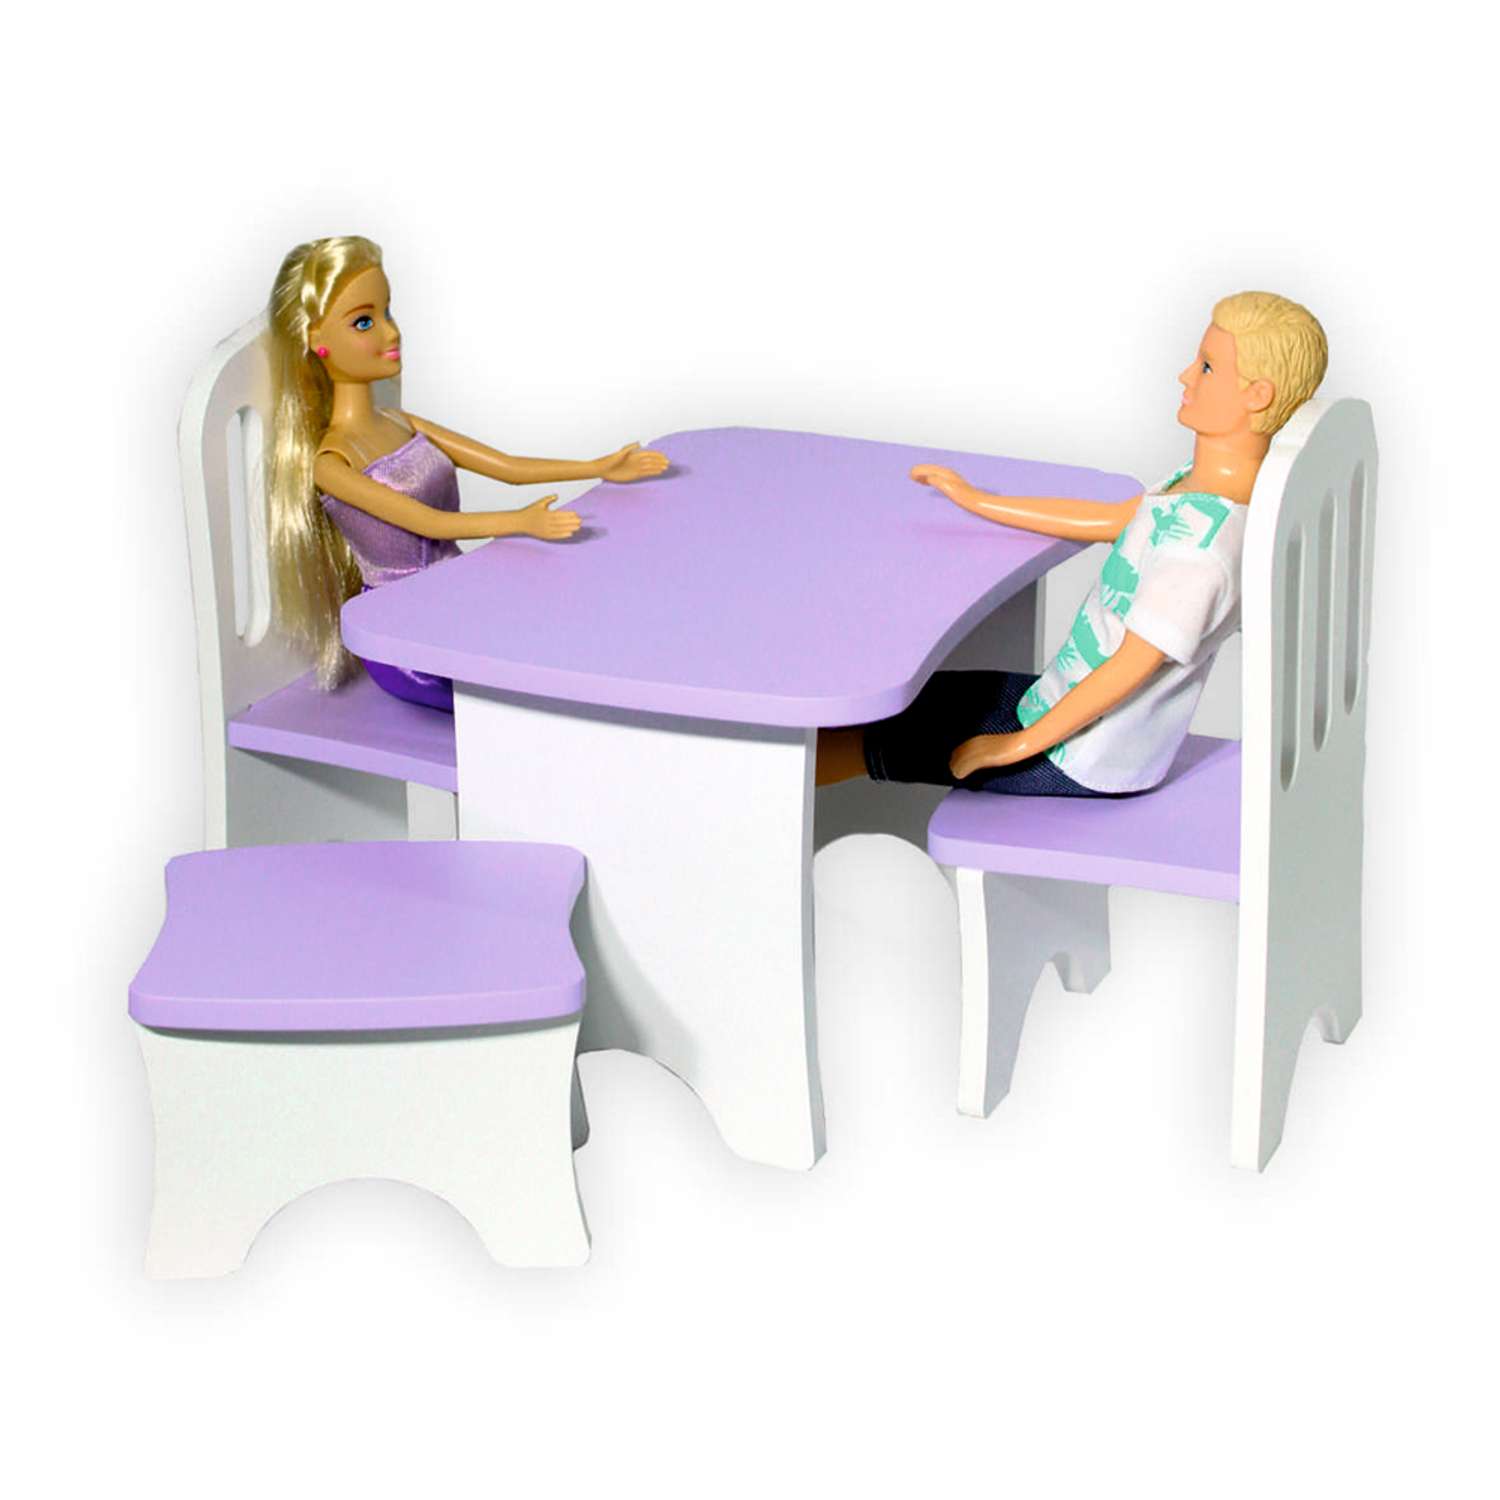 Набор деревянной мебели ViromToys для кукол фиолетовый Мд0031 - фото 2